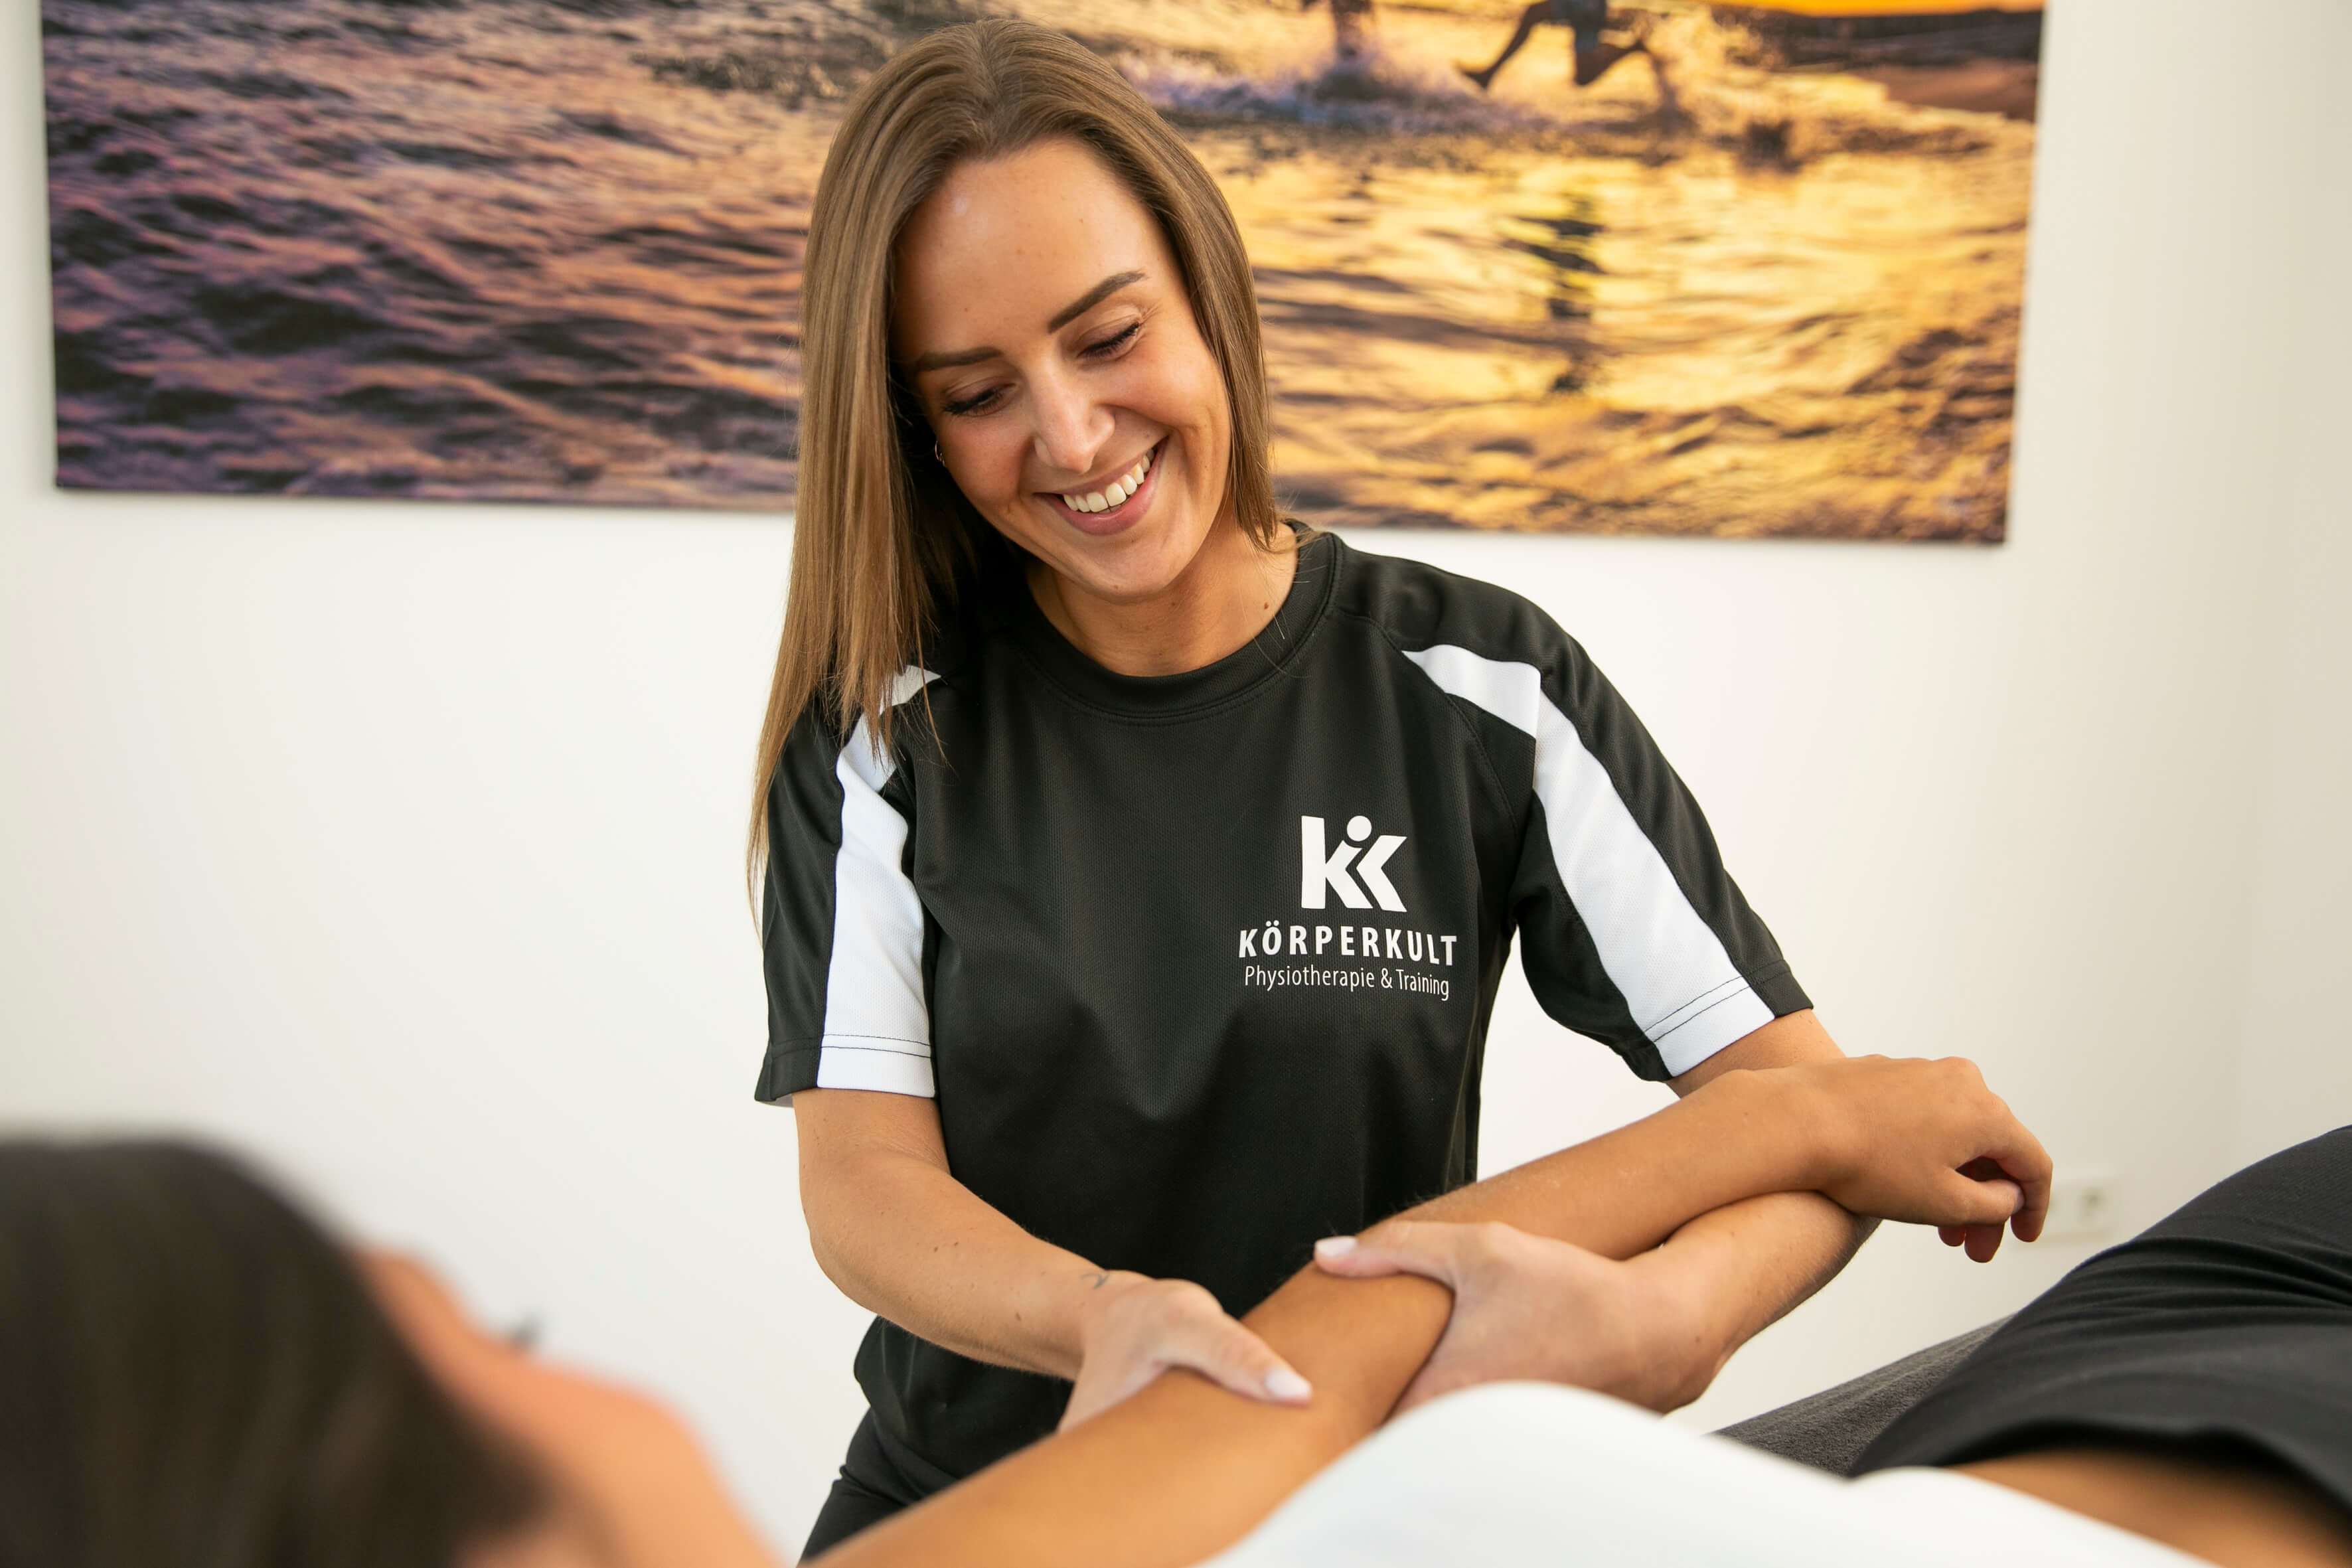 Klassische Physiotherapie bei KÖRPERKULT - Physiotherapie und Training in Essen